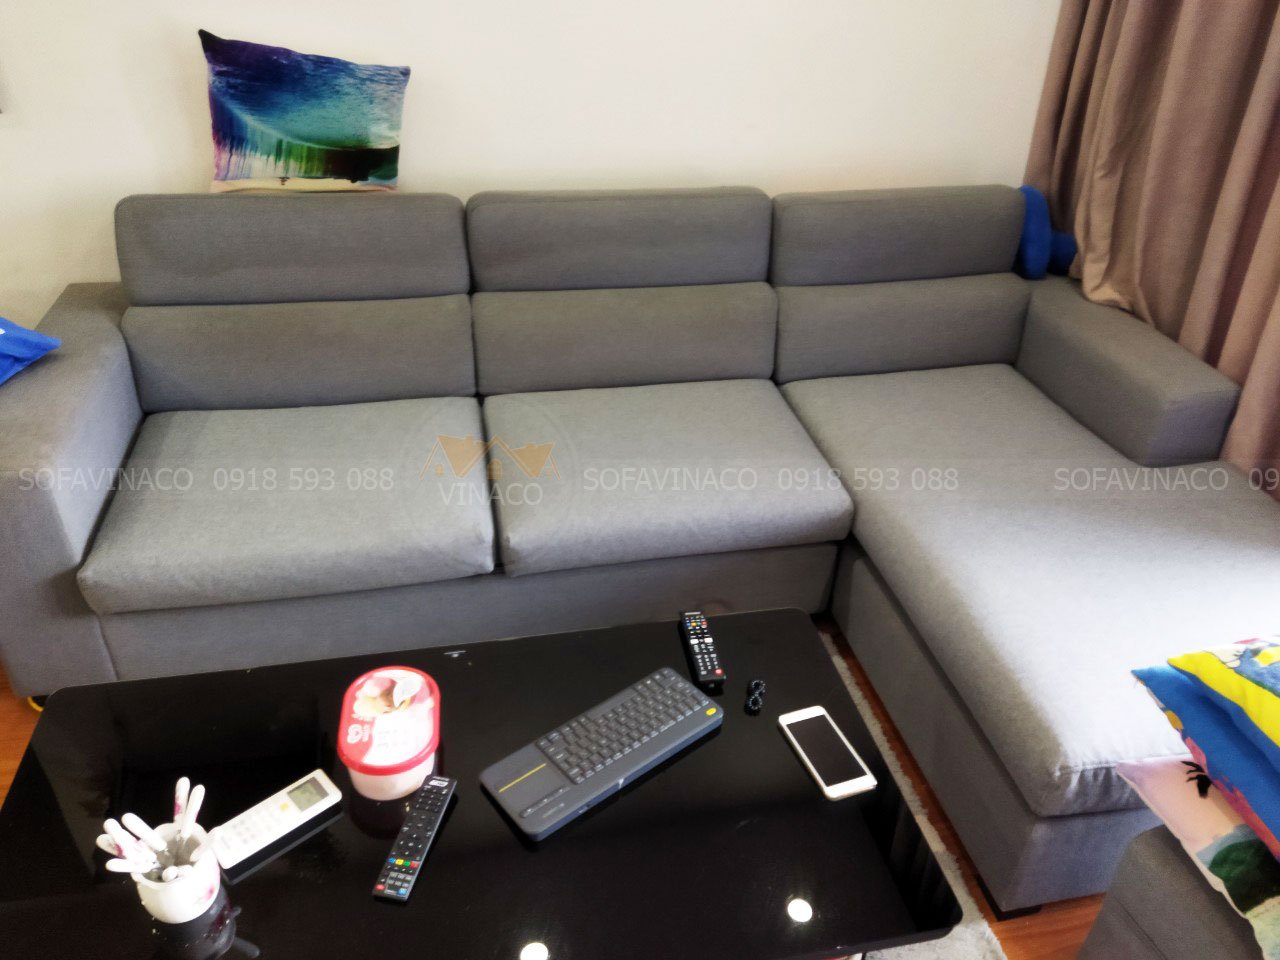 Chọn màu sắc của ghế sofa theo căn hộ của bạn